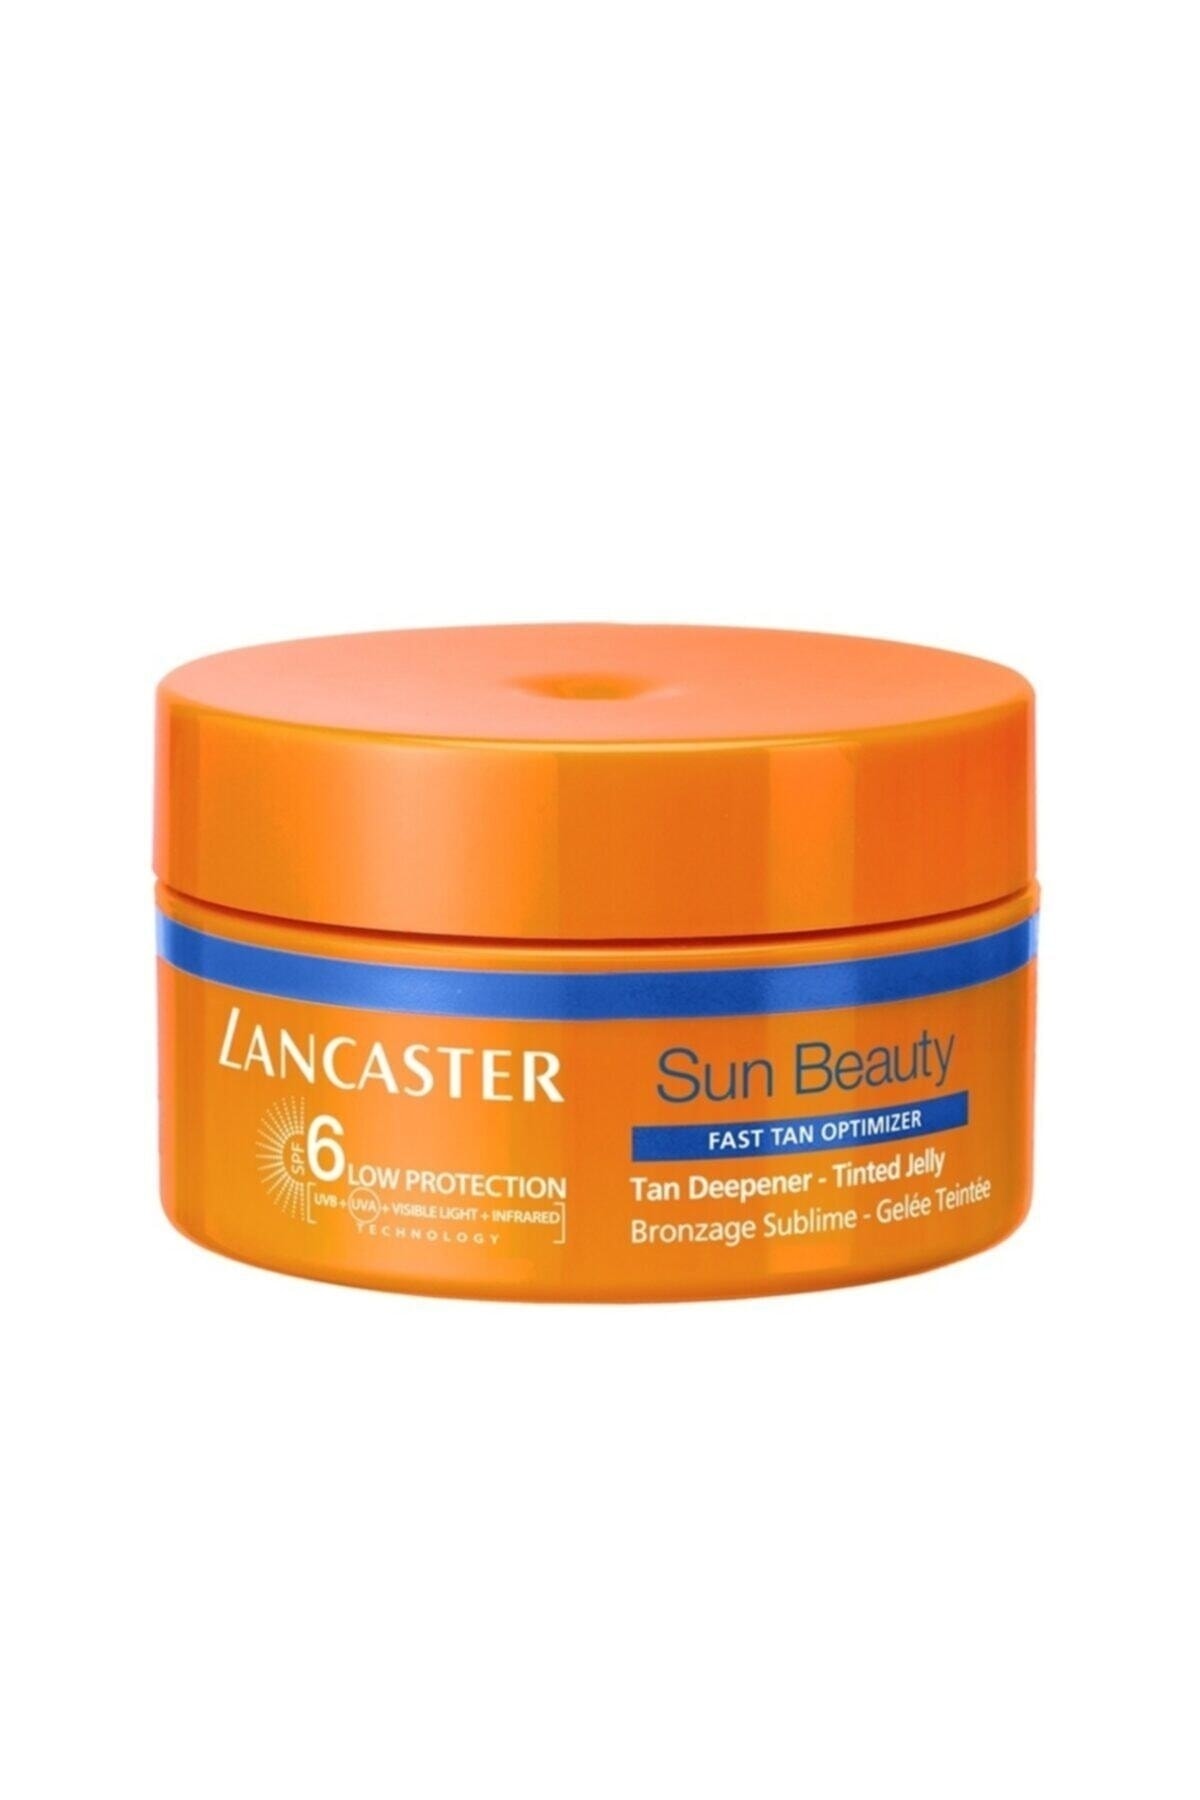 Lancaster La Sun Beauty Tan Deepener - Tinted Spf6 200 Ml Güneş Ürünü*.